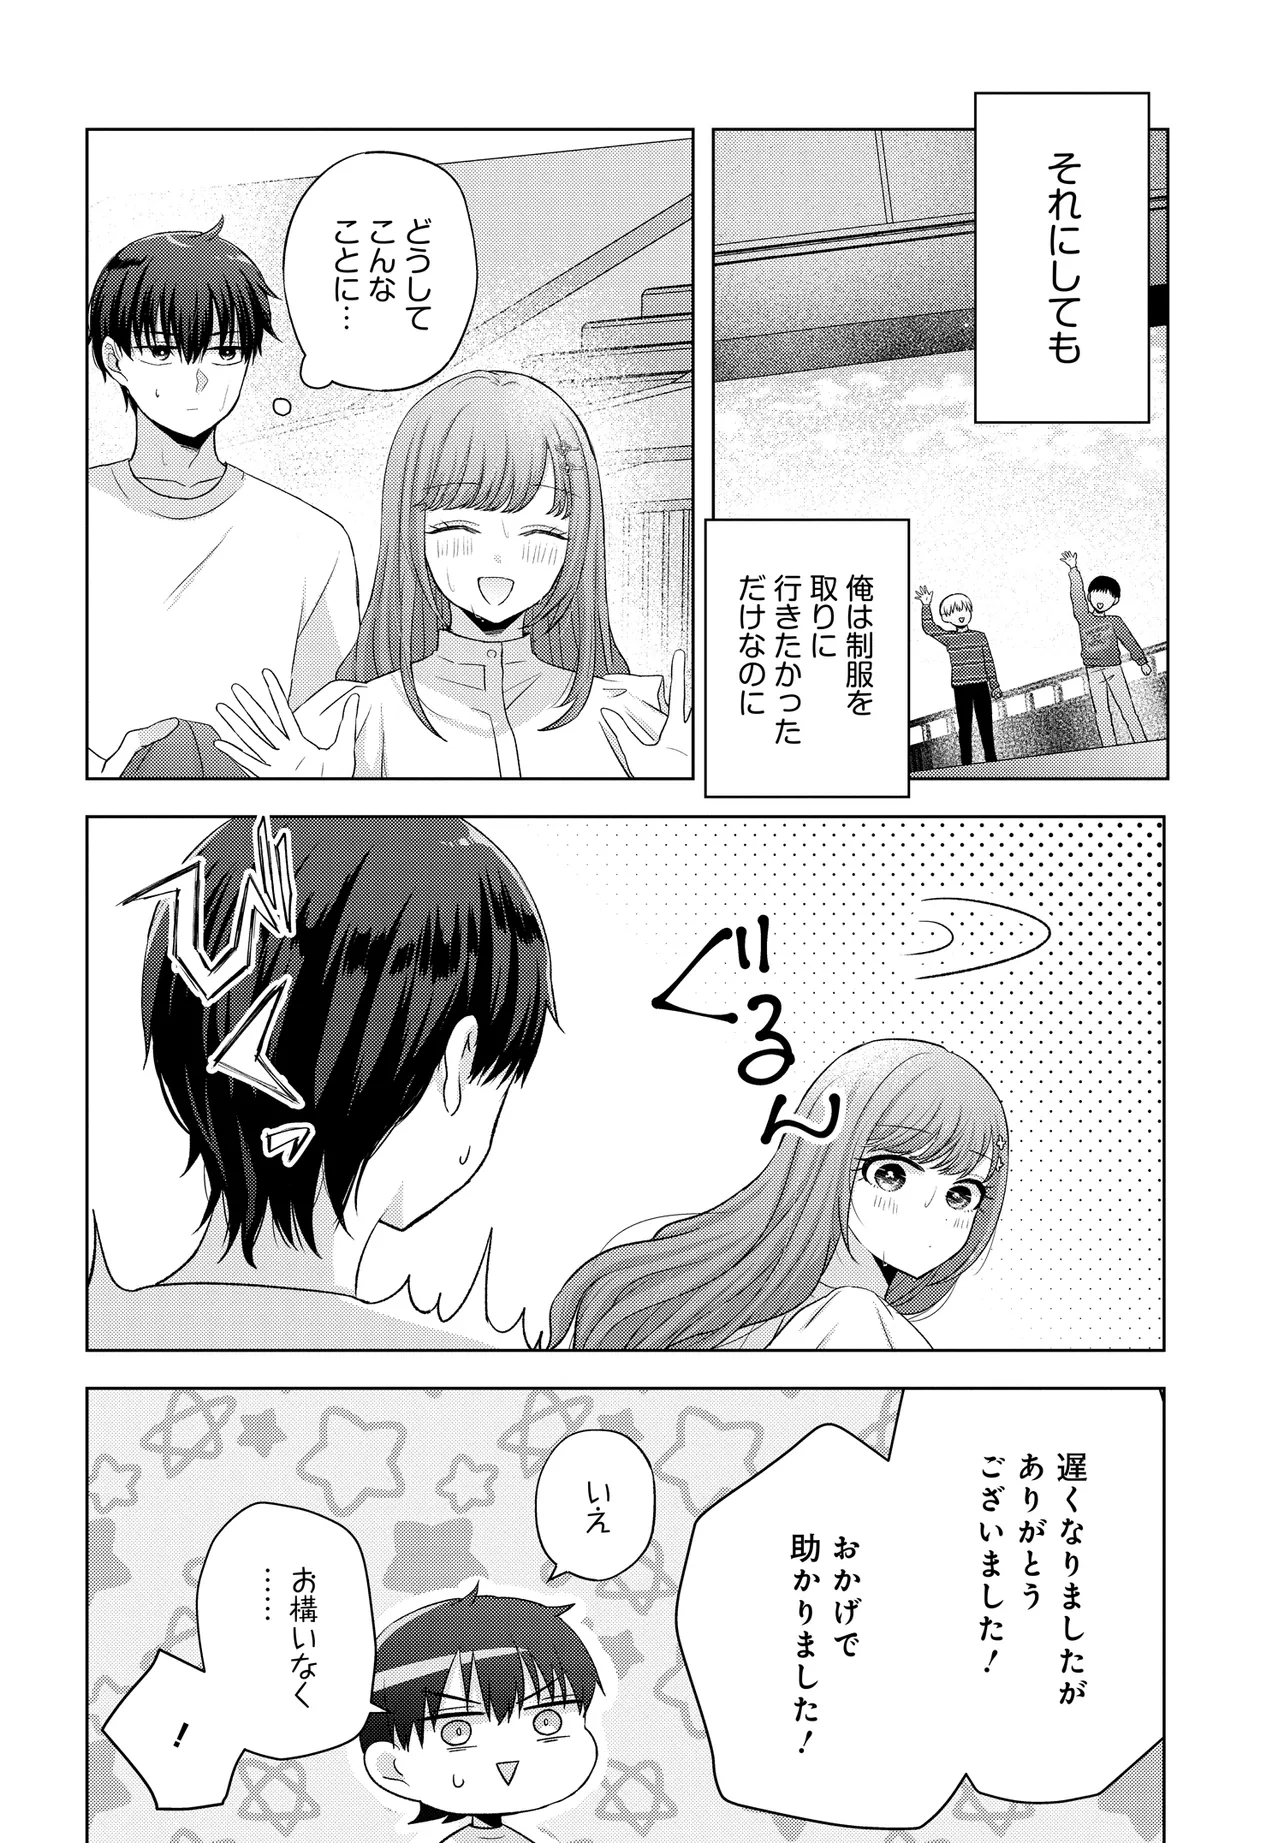 Suufun Go no Mirai ga Wakaru you ni Natta kedo, Onnagokoro wa Wakaranai. - Chapter 1 - Page 30